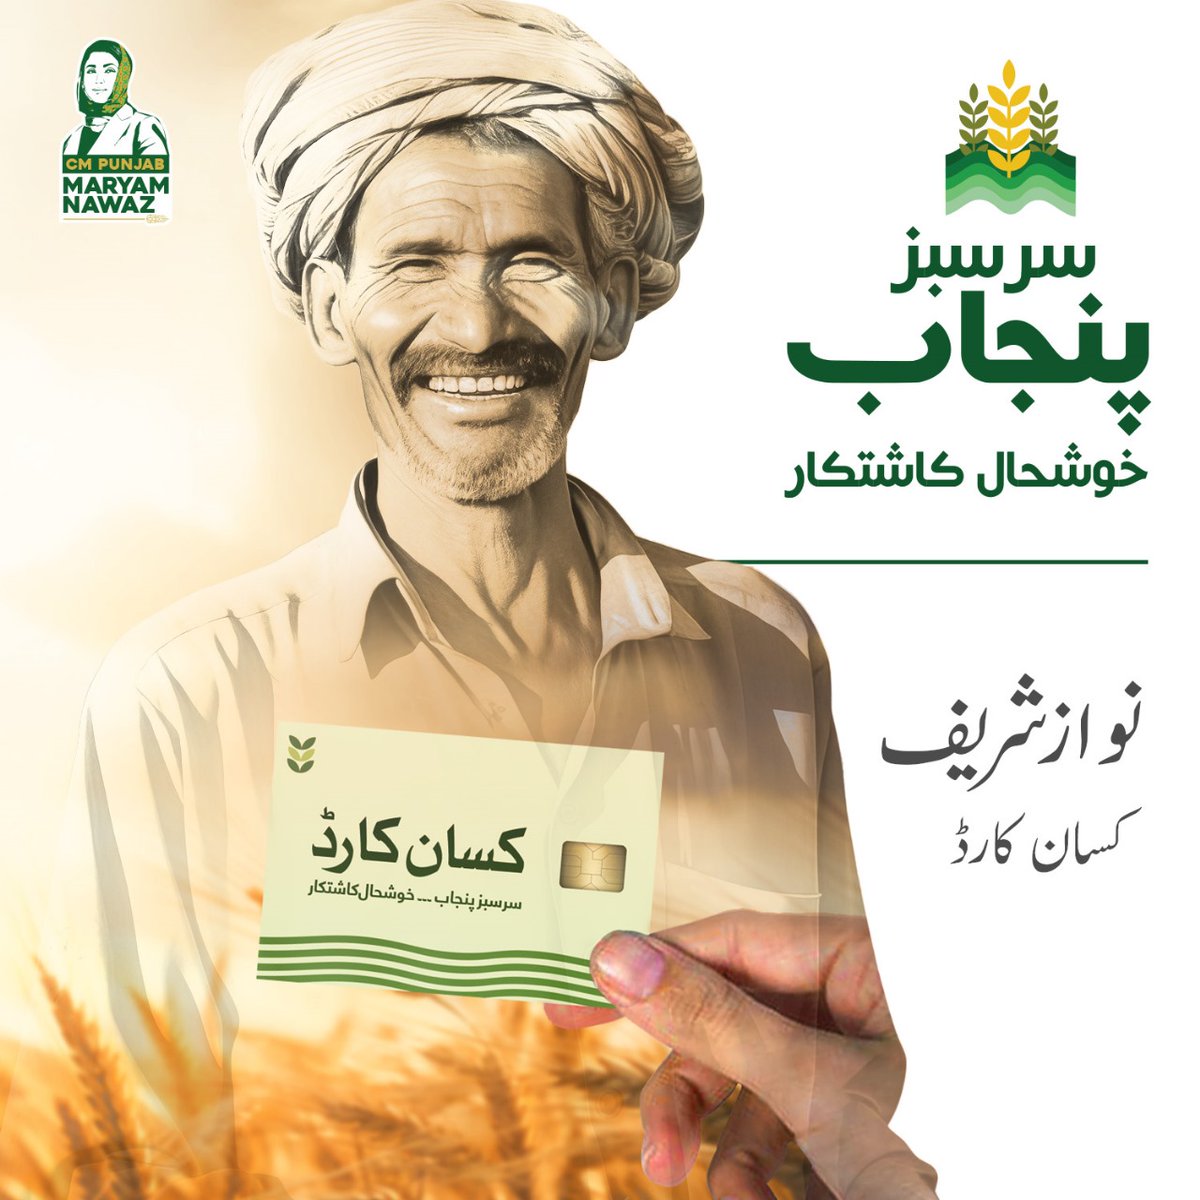 وزیراعلیٰ کے وژن کے تحت تمام چھوٹے کسانوں کیلیے 'نوازشریف کسان کارڈ' کا اجراء